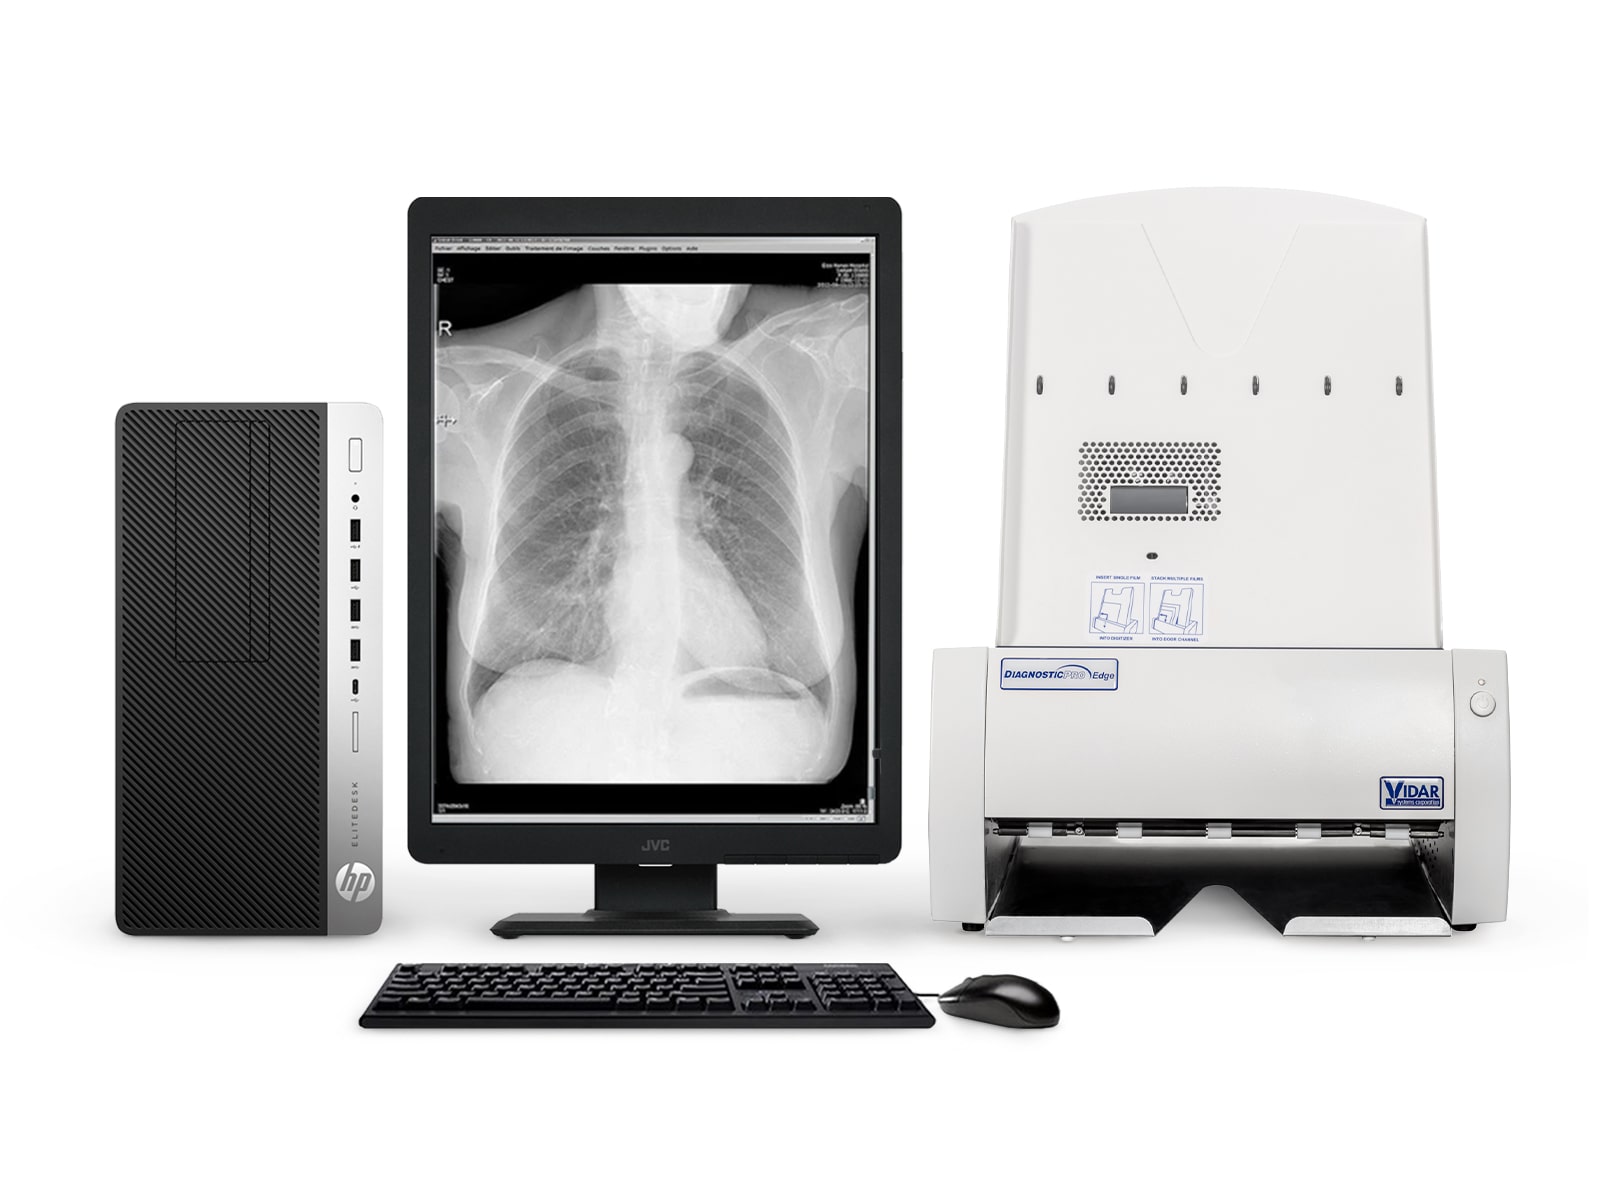 Vidar DiagnosticPro Edge Radiología general y mamografía Digitalizador de película (19580-001) Monitors.com